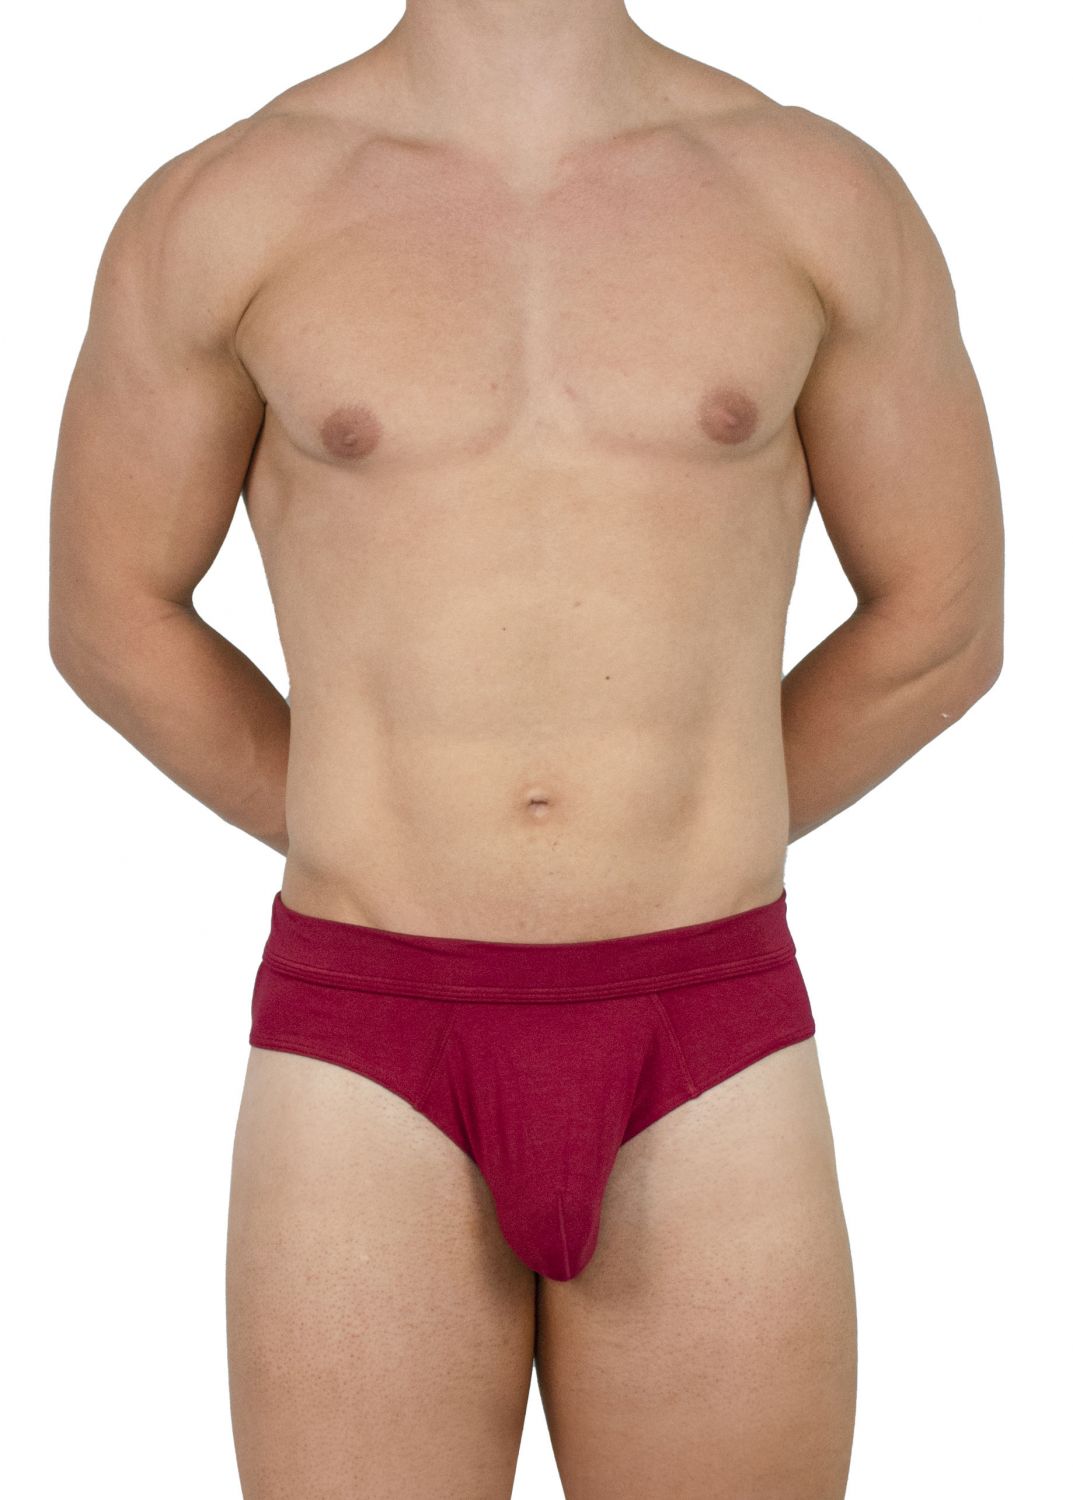 Deep Maroon Boxer Briefs  Best Mens Underwear for Sweating – VanJohan  Underwear